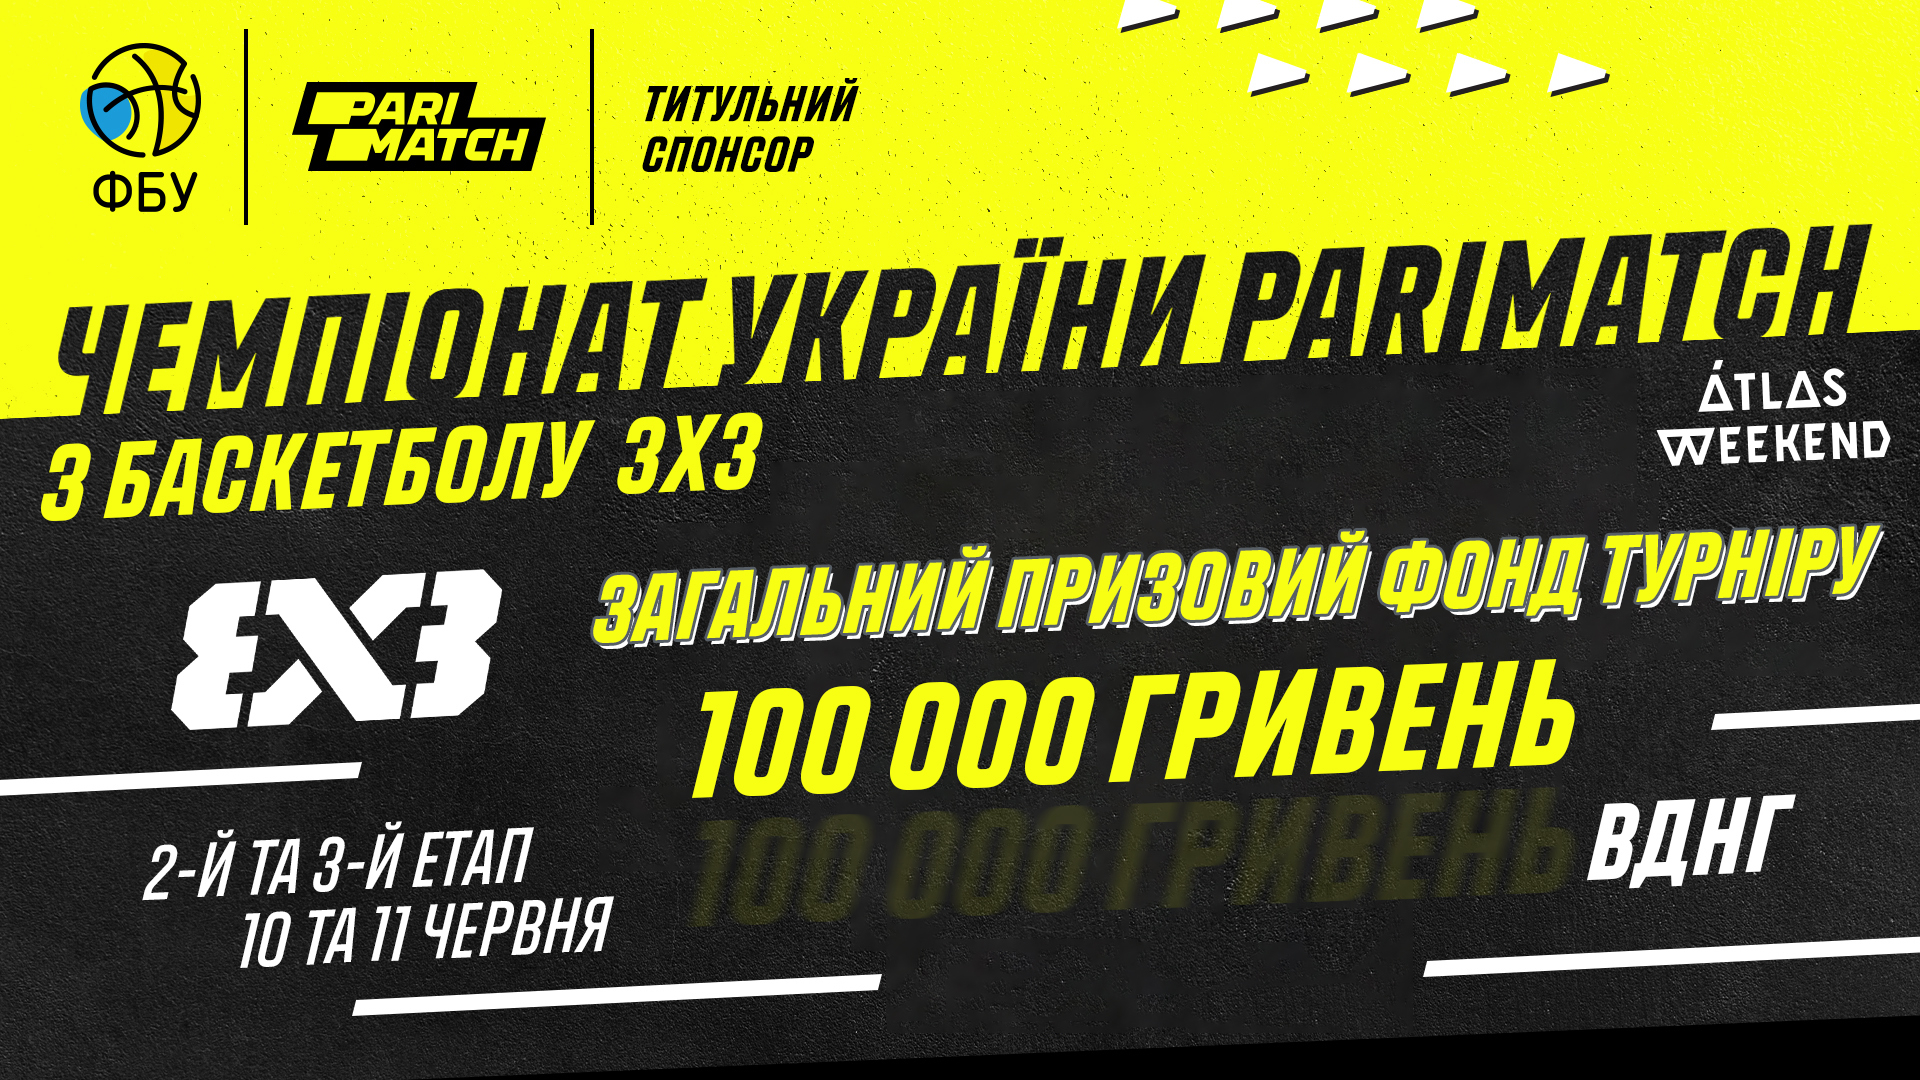 Учасники чемпіонату України 3х3 на Atlas Weekend розіграють 100 000 гривень